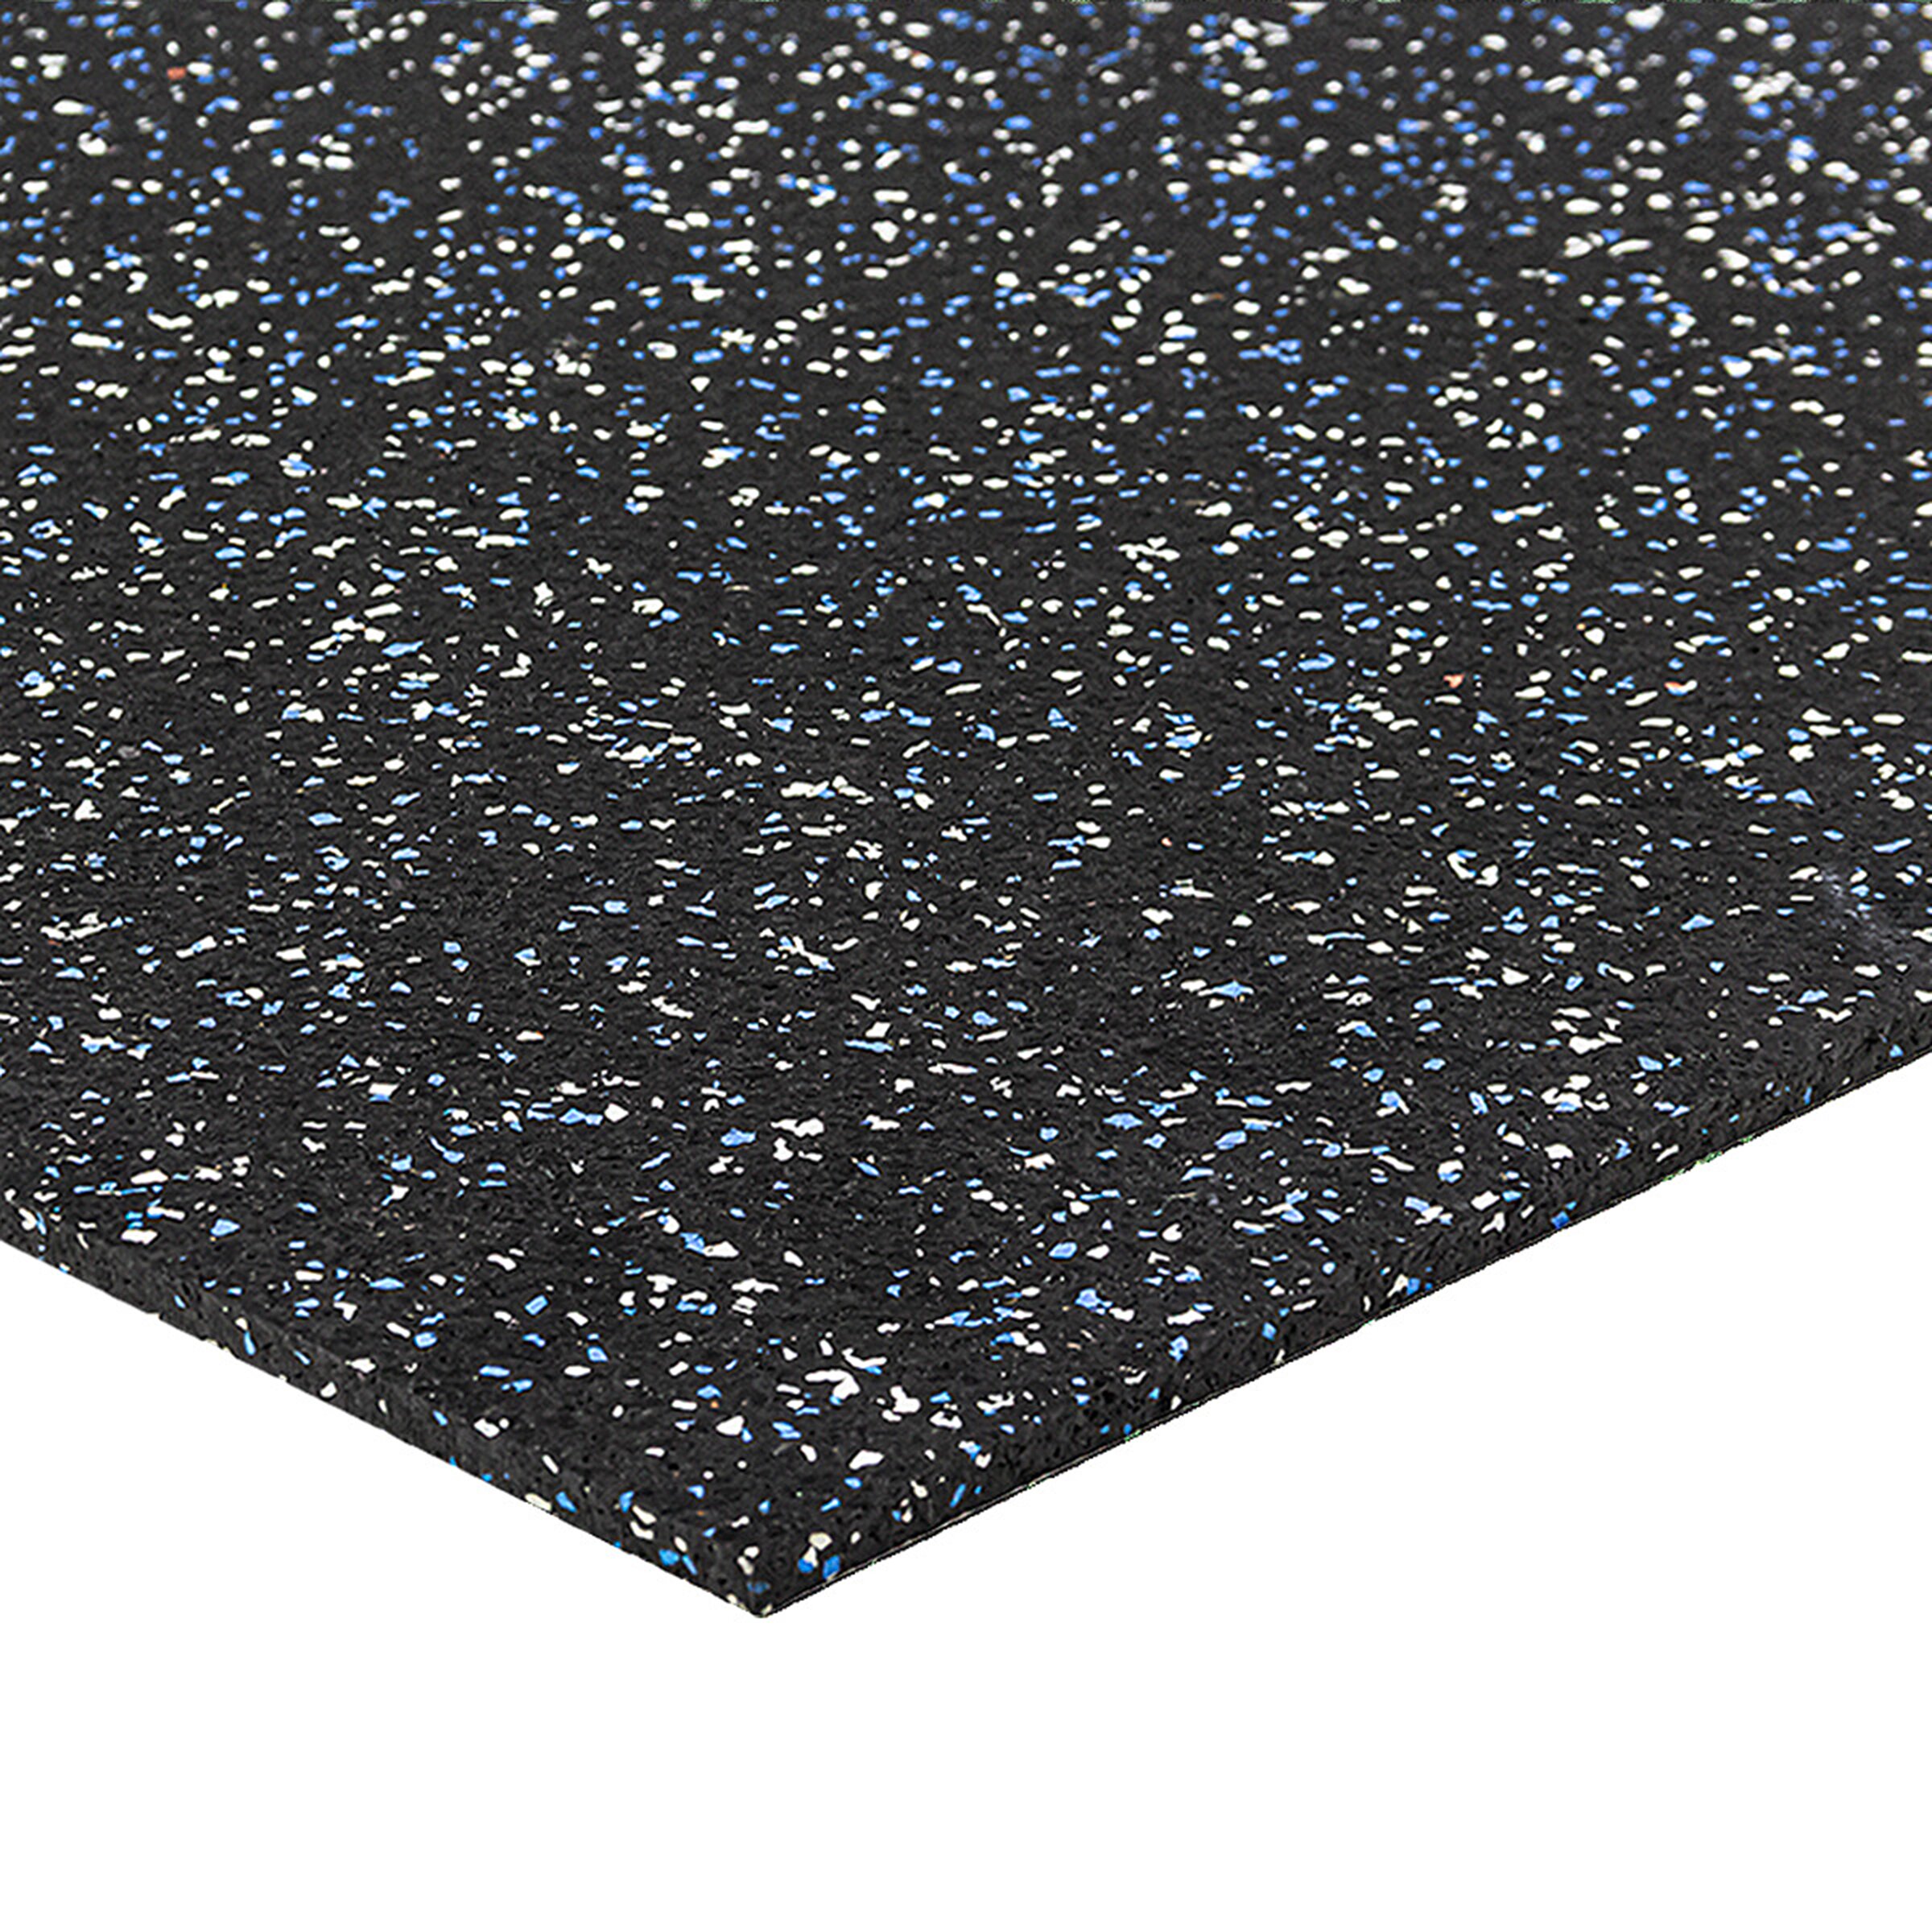 Čierno-bielo-modrá gumová modulová puzzle dlažba (roh) FLOMA FitFlo SF1050 - dĺžka 100 cm, šírka 100 cm, výška 0,8 cm